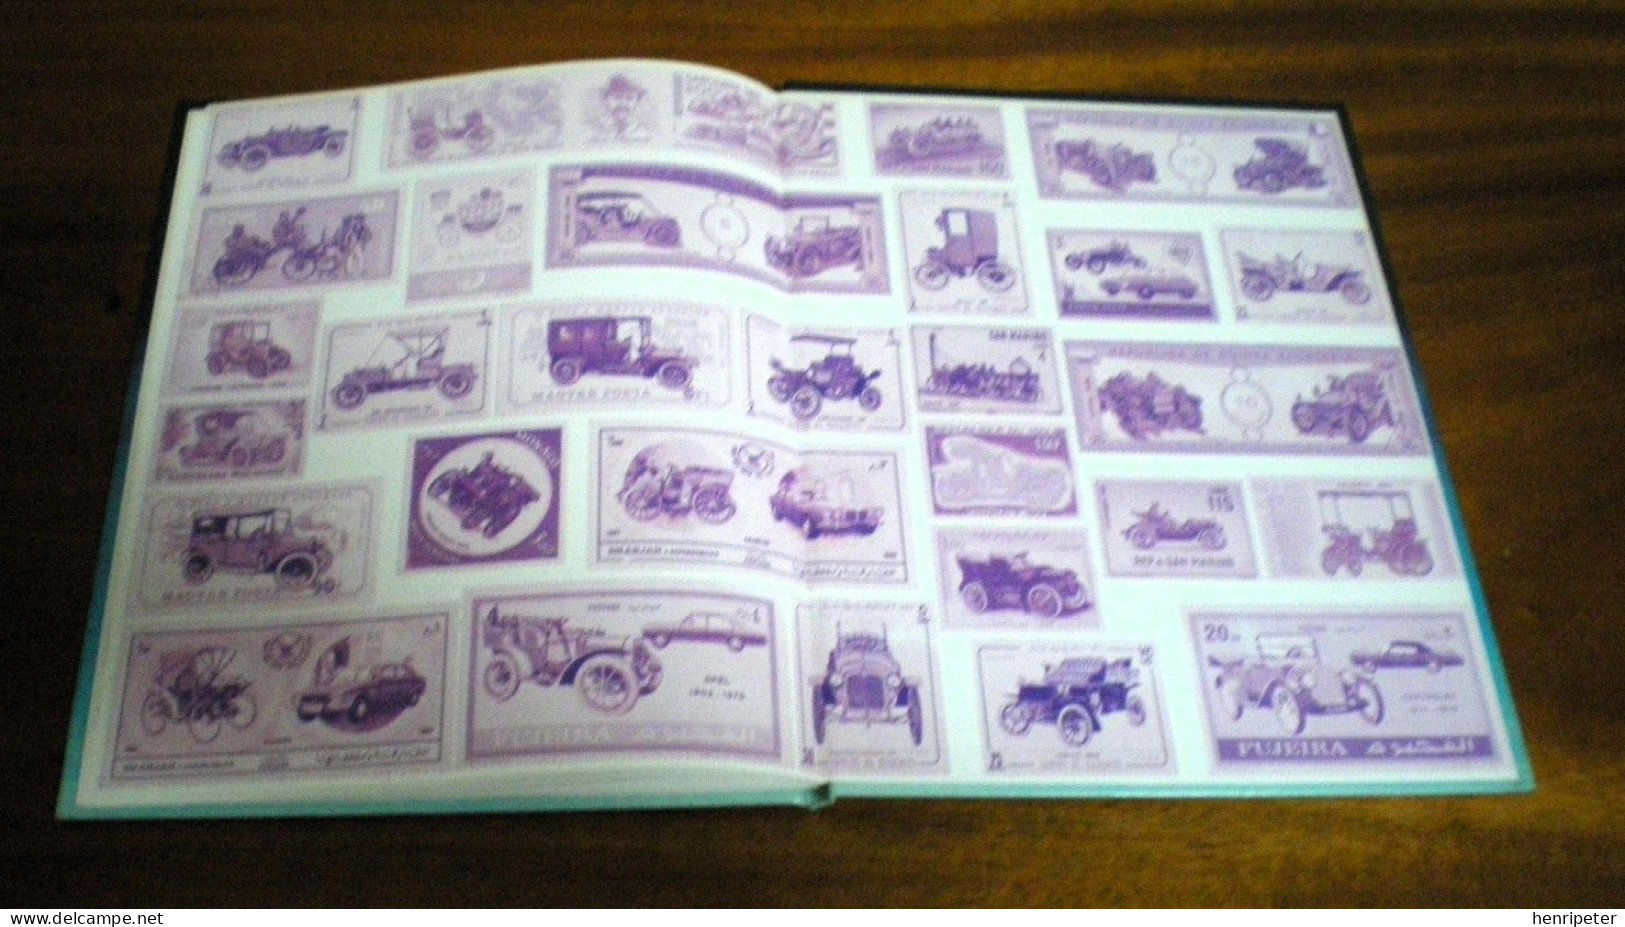 Les voitures d’autrefois par le timbre-poste – Album philatélique - FLAMMARION - Philippe DUGER - Vintage